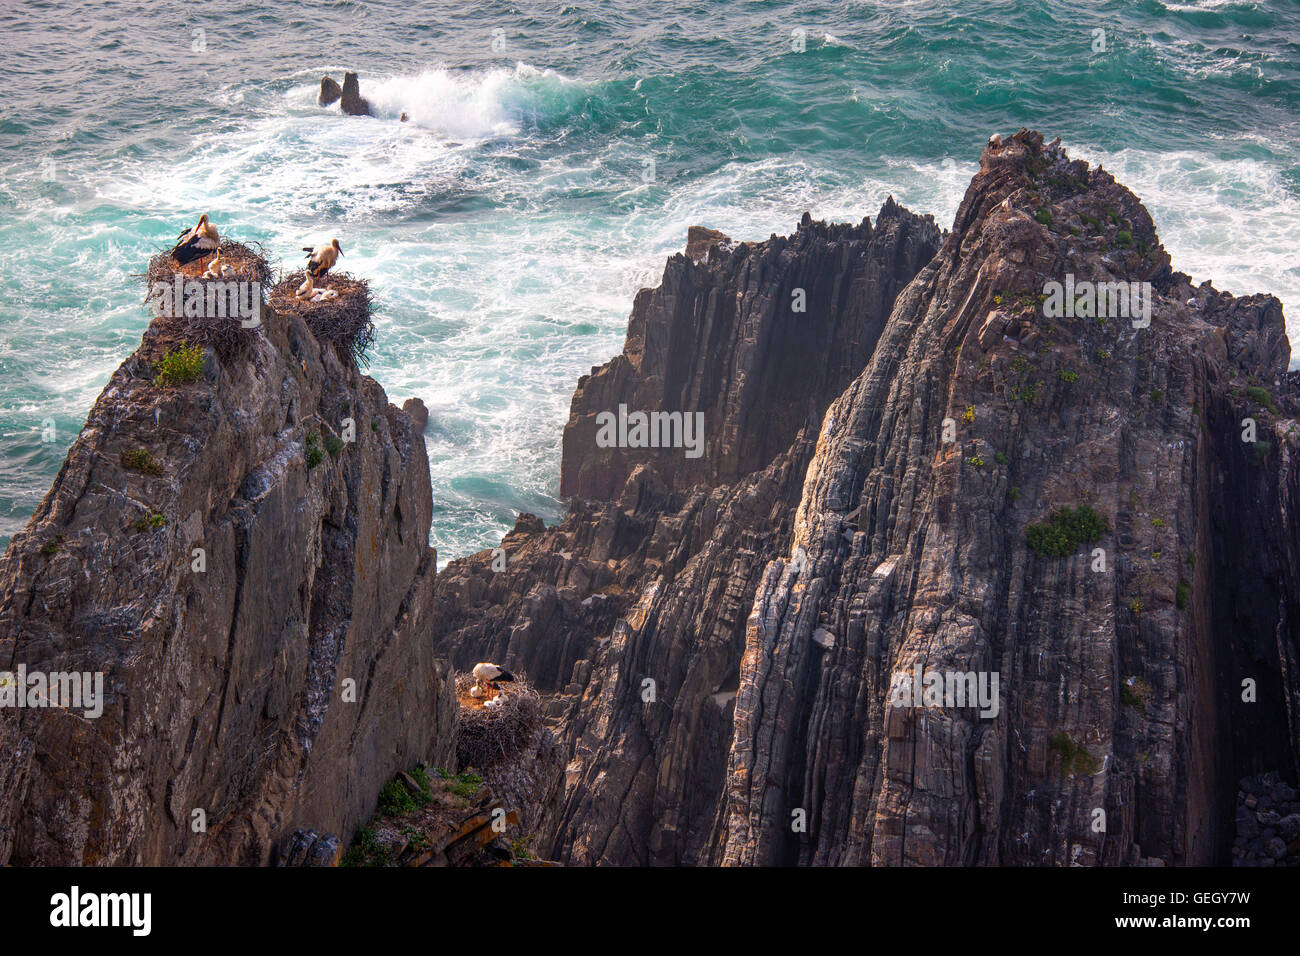 Cigüeñas blancas con pollitos anidan en lo alto de los acantilados rocosos de la costa portuguesa. Foto de stock